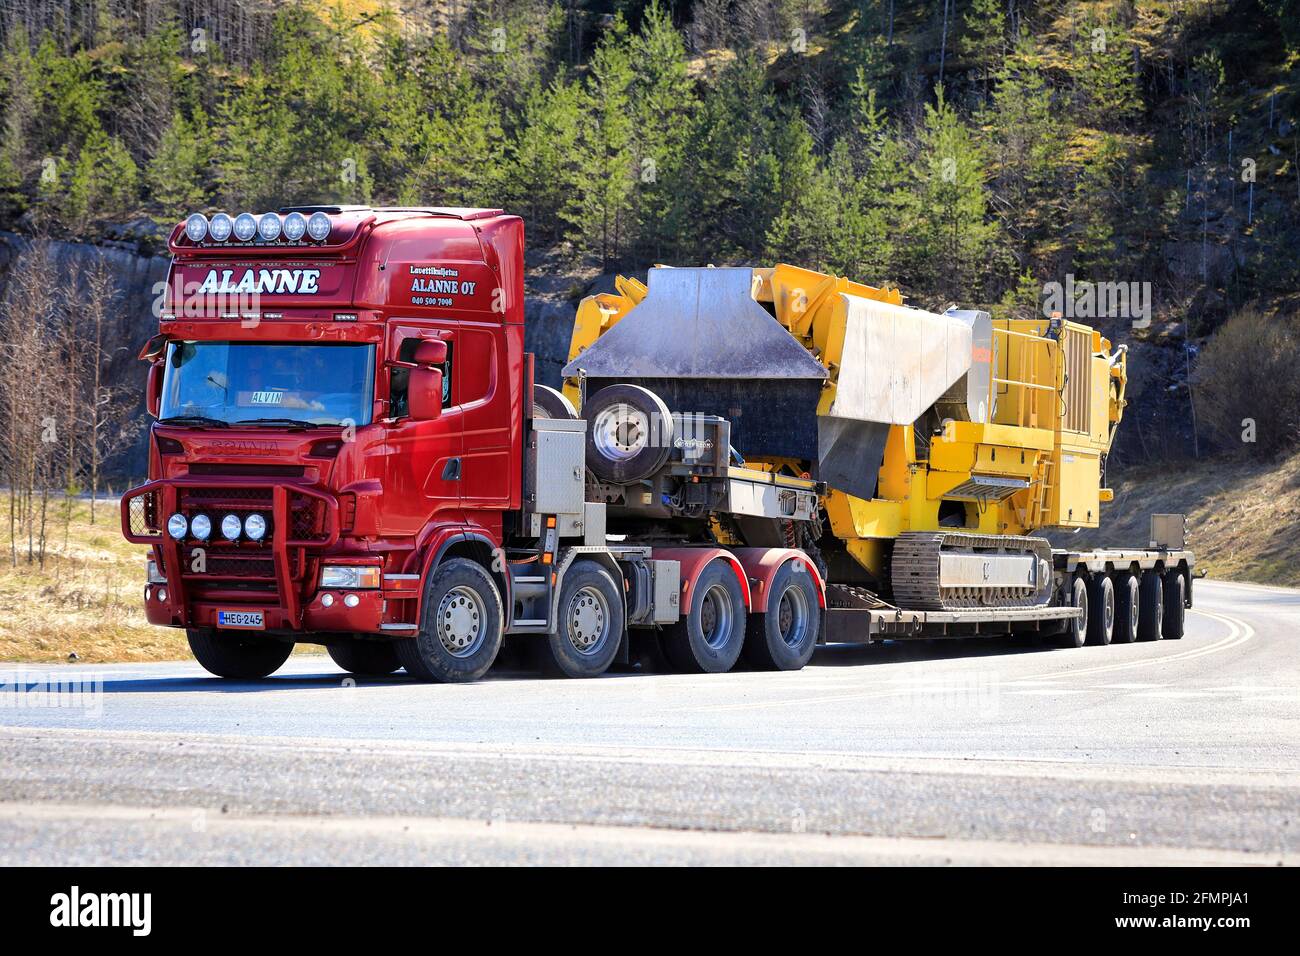 Le camion Red Scania Lavettikuljetus Alanne Oy tire le concasseur à mâchoires B5 de Keestrack sur une semi-remorque à plateau surchargée. Grande charge. Forssa, Finlande. 29 avril 2021. Banque D'Images